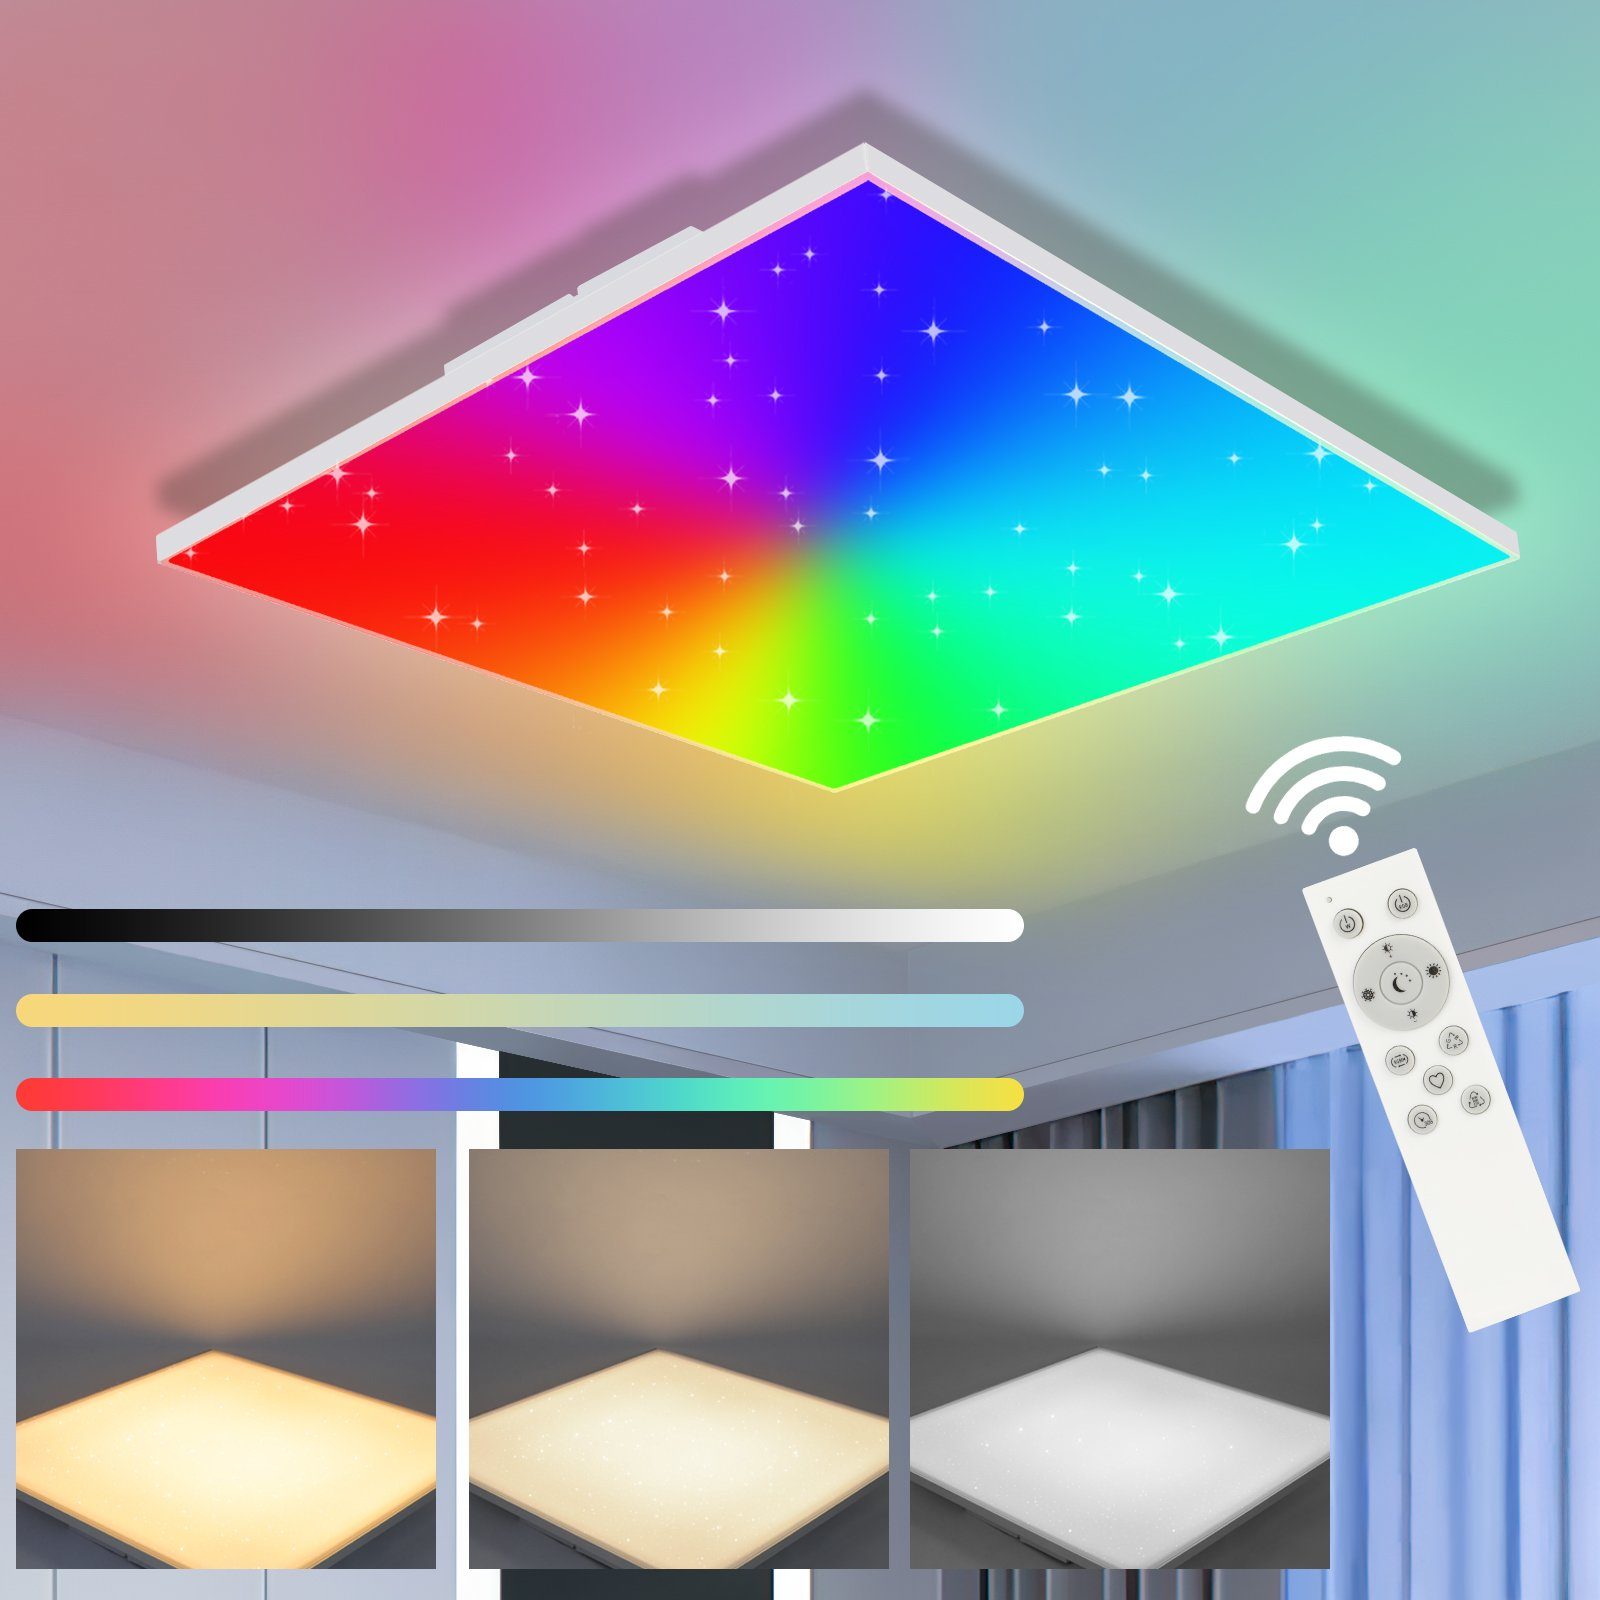 Nettlife LED Deckenleuchte Dimmbar mit Fernbedienung Sternenhimmel Flach 18W, RGB Farbwechsel, LED fest integriert, für Schlafzimmer Küchen Wohnzimmer Kinderzimmer, 30 x 30 x 6.5 cm